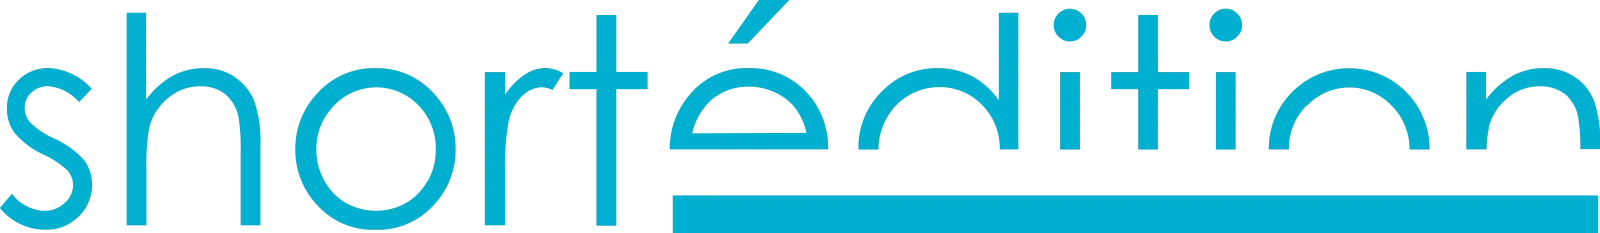 Short Edition Logo - Blue